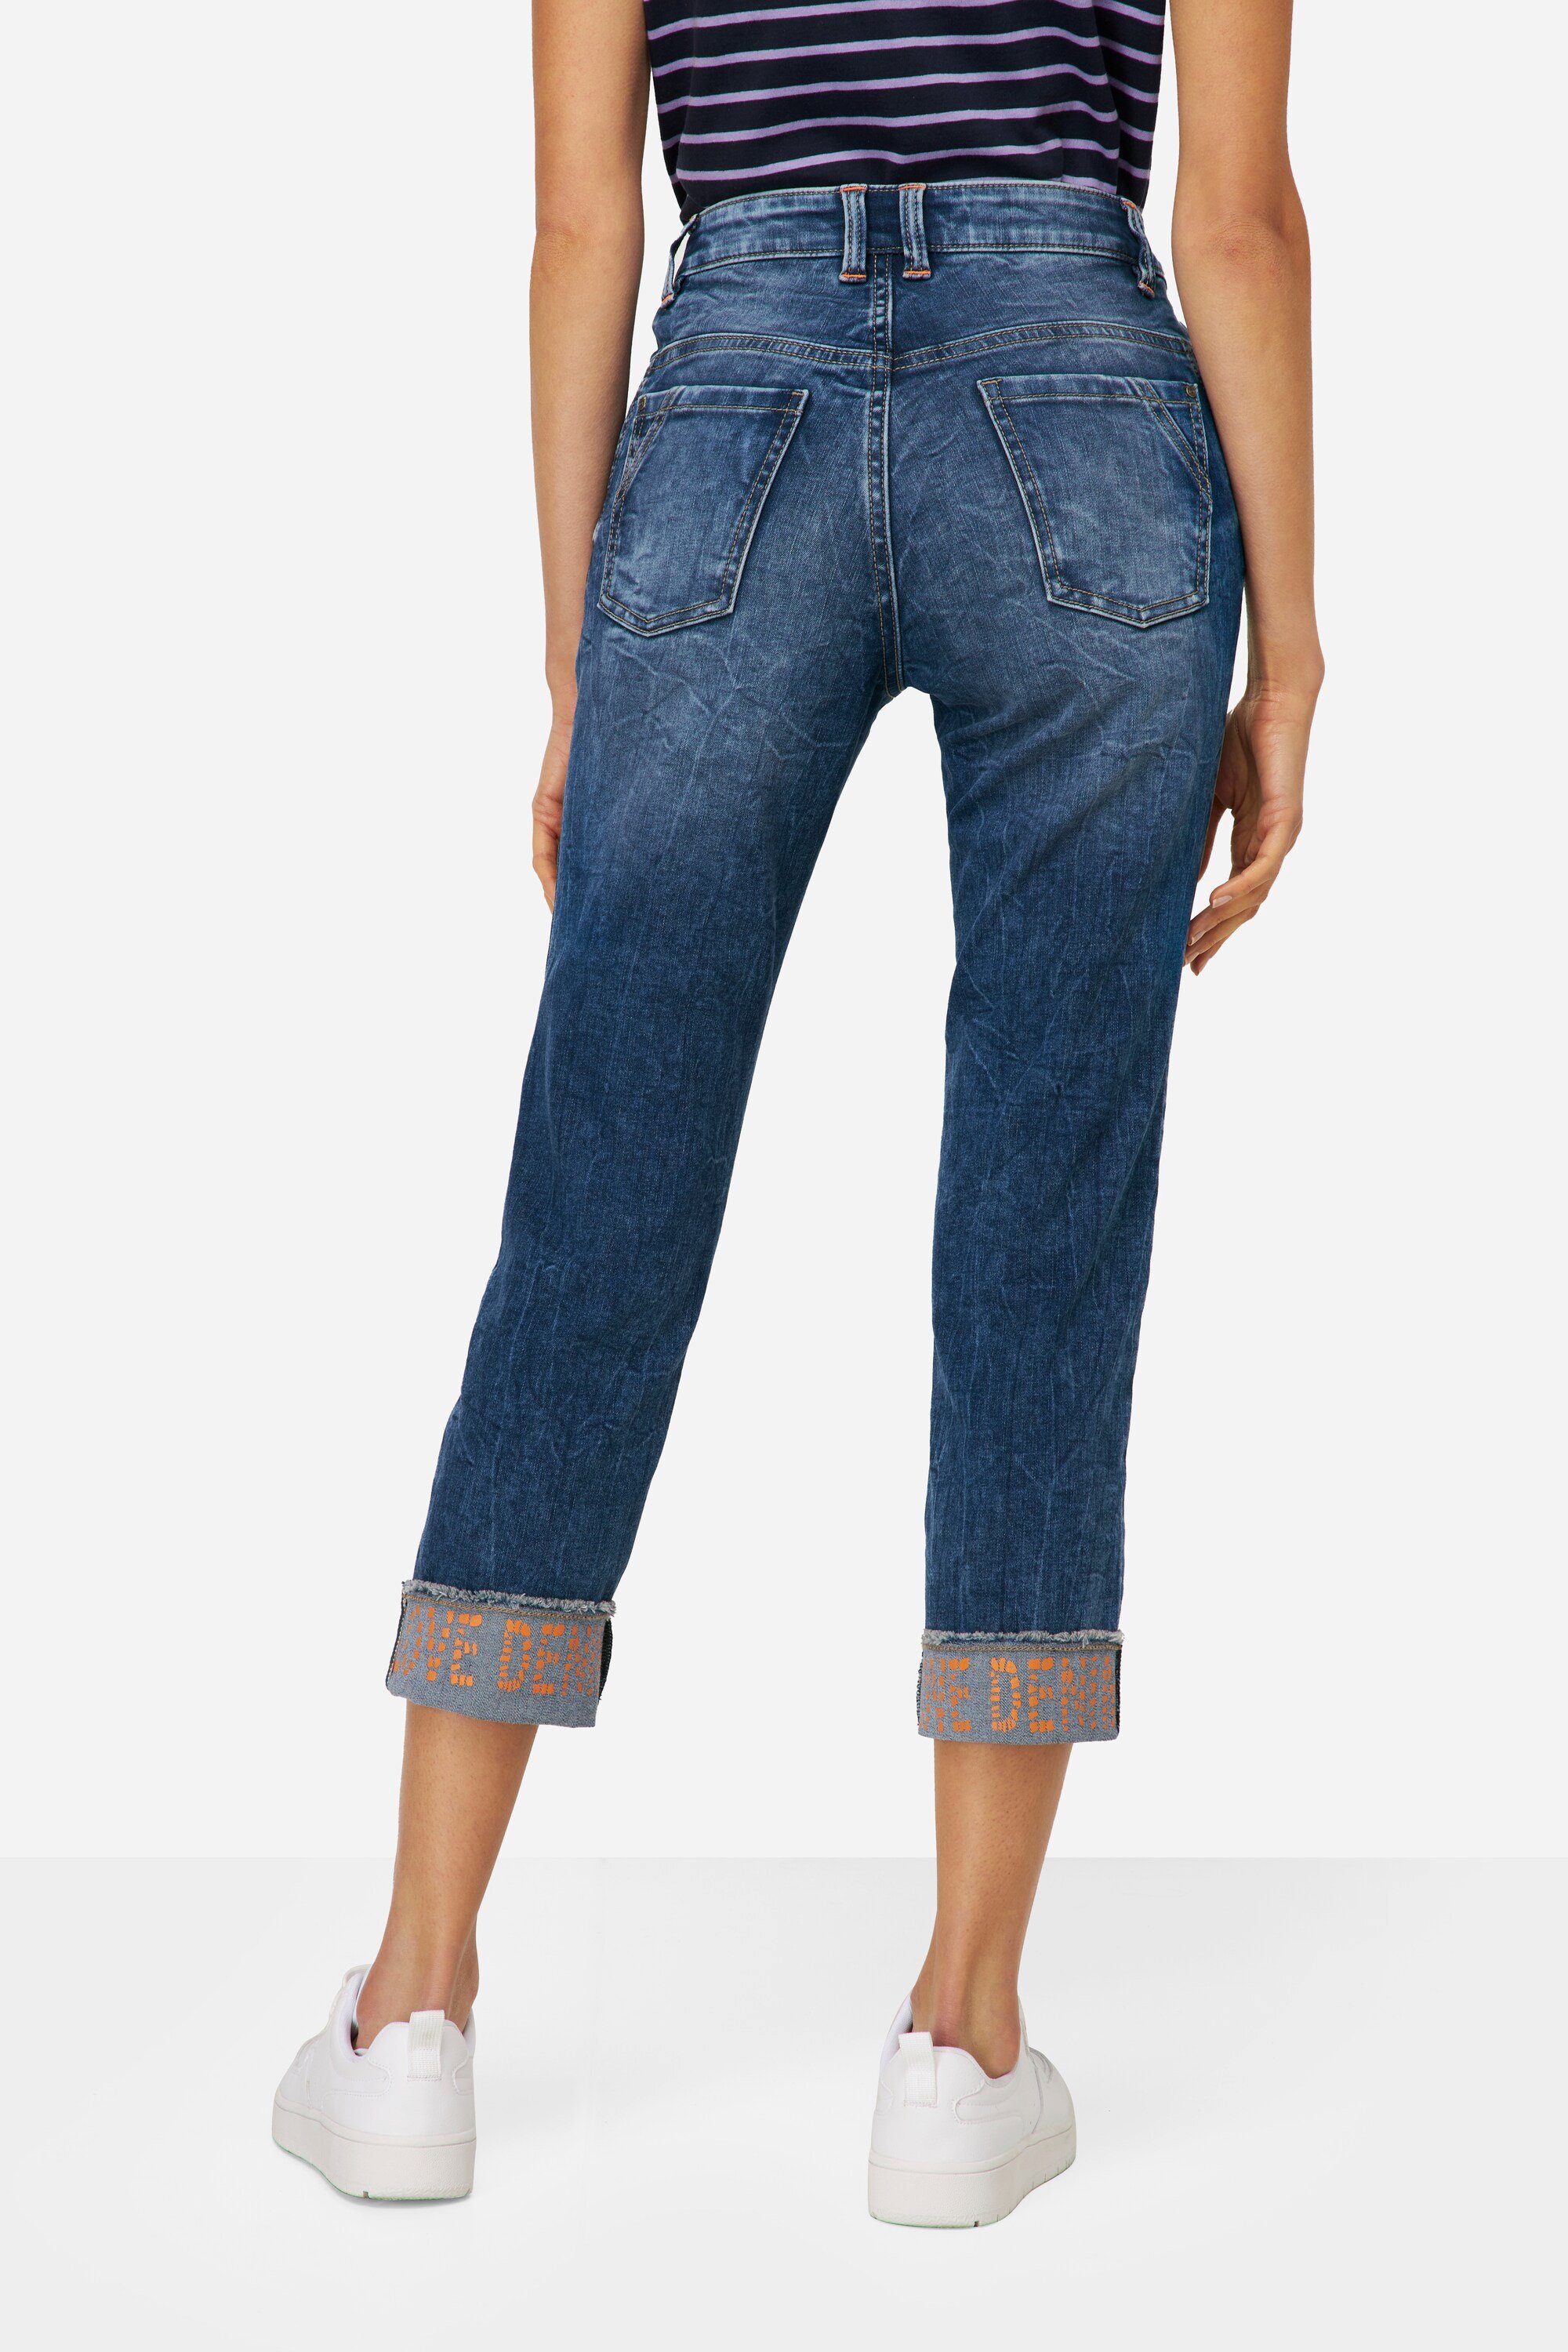 5-Pocket Regular-fit-Jeans 7/8-Slim-Jeans Saum-Umschlag Laurasøn